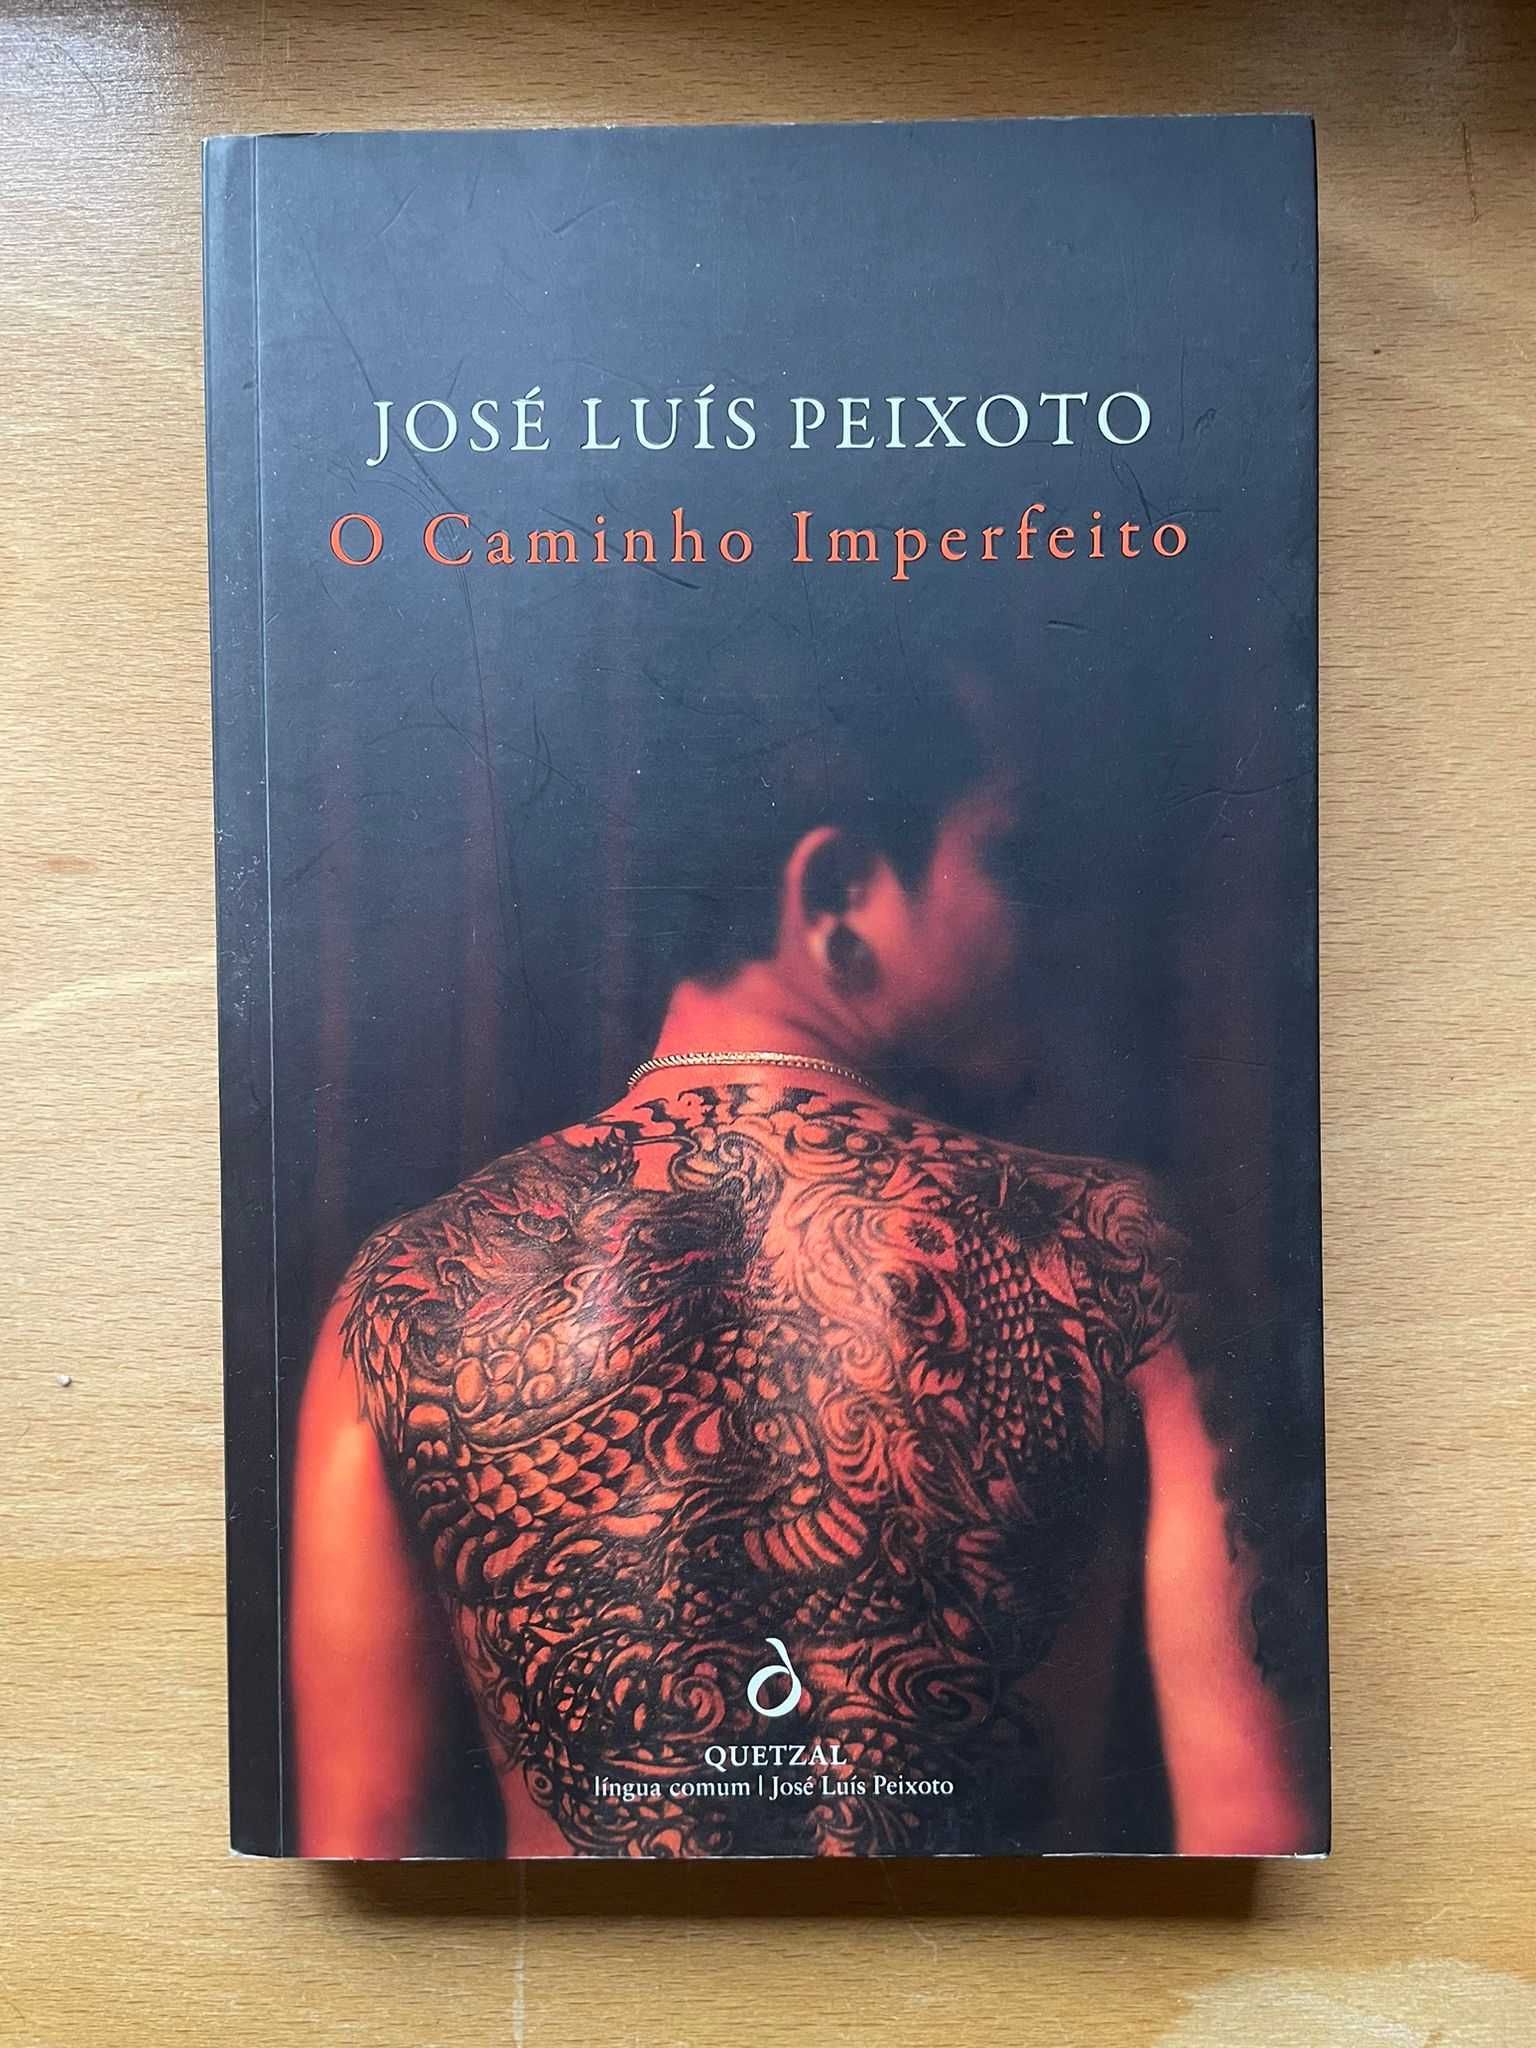 Livro "O Caminho Imperfeito" - José Luís Peixoto